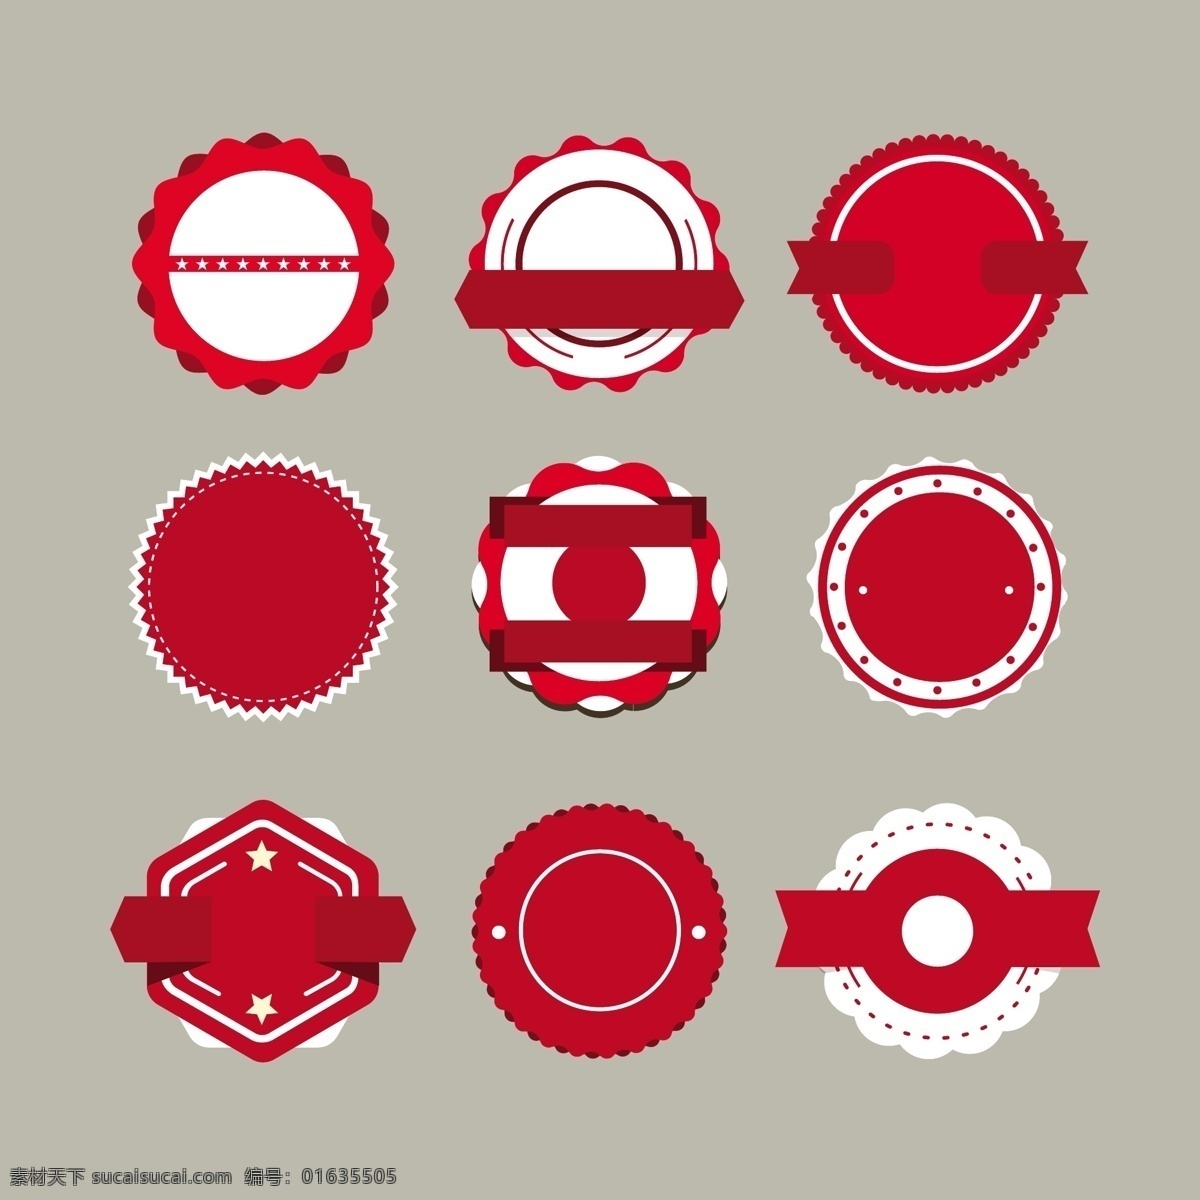 红色 圆形 盘子 矢量 图案 线条 矢量素材 红色盘子 几何 装饰图案